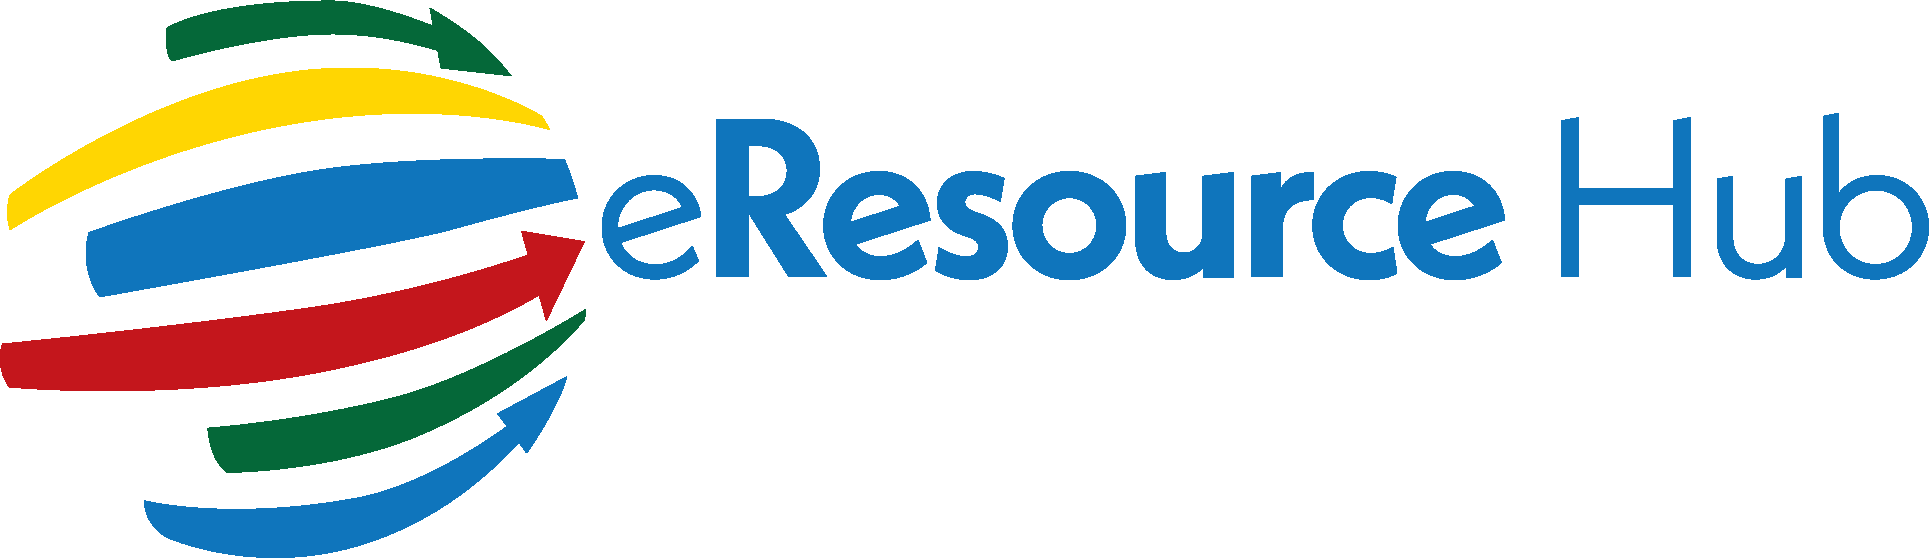 eResource Hub